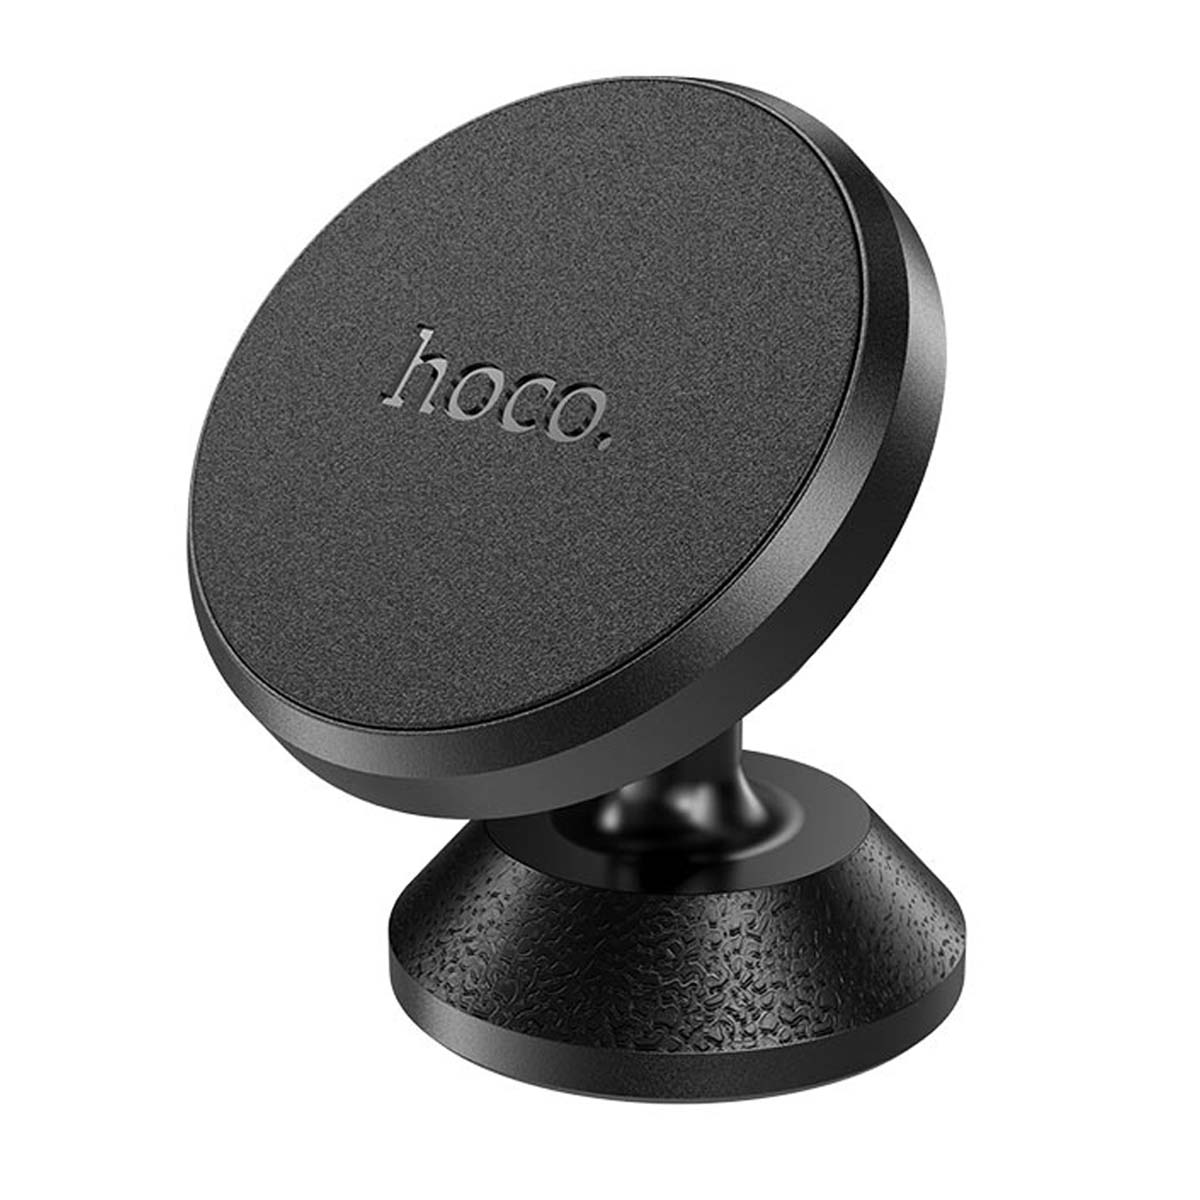 Автомобильный магнитный держатель HOCO CA79 Ligue для смартфона, цвет черный